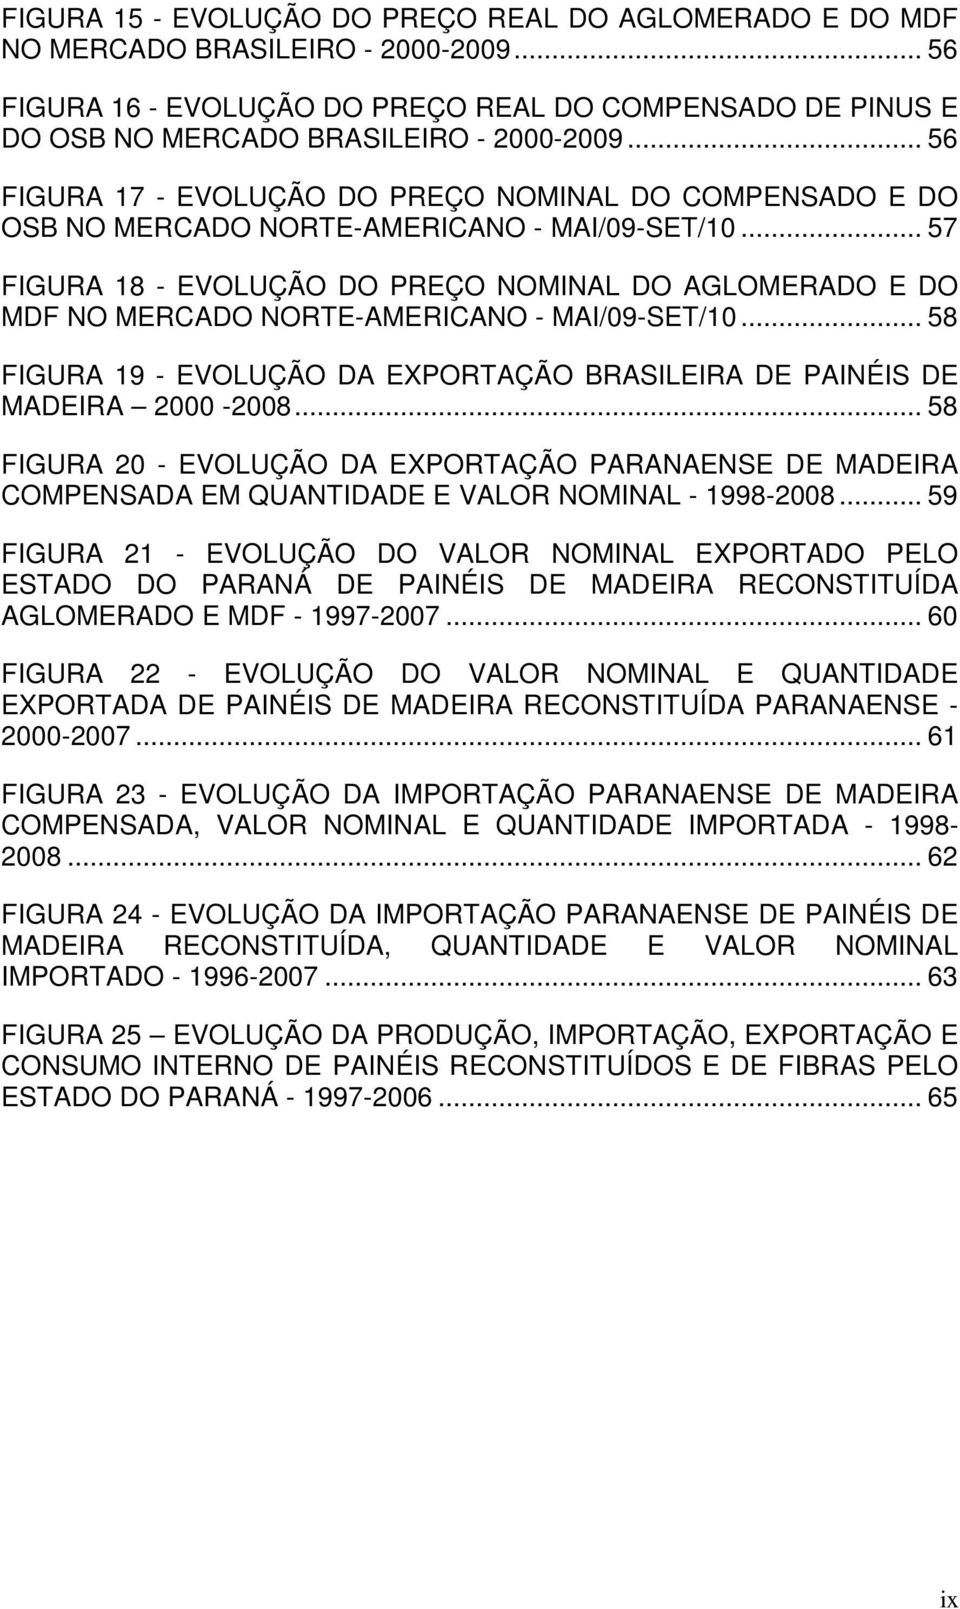 .. 57 FIGURA 18 - EVOLUÇÃO DO PREÇO NOMINAL DO AGLOMERADO E DO MDF NO MERCADO NORTE-AMERICANO - MAI/09-SET/10... 58 FIGURA 19 - EVOLUÇÃO DA EXPORTAÇÃO BRASILEIRA DE PAINÉIS DE MADEIRA 2000-2008.